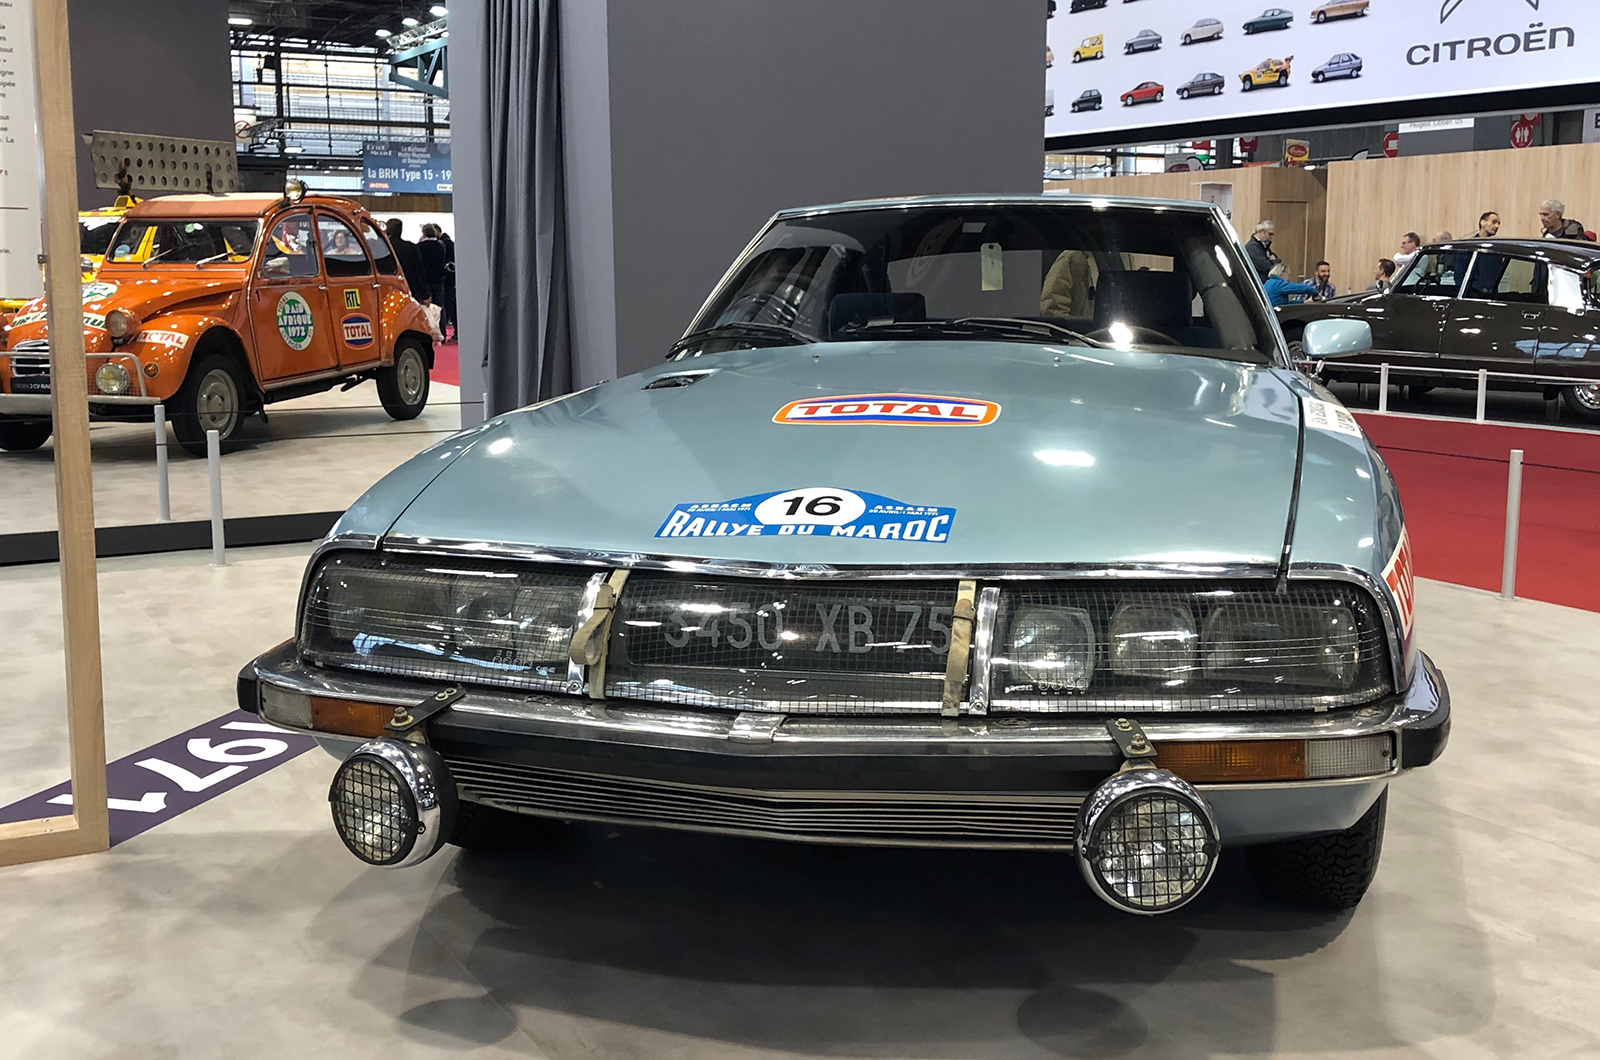 How Citroën stole the show at Rétromobile 2019